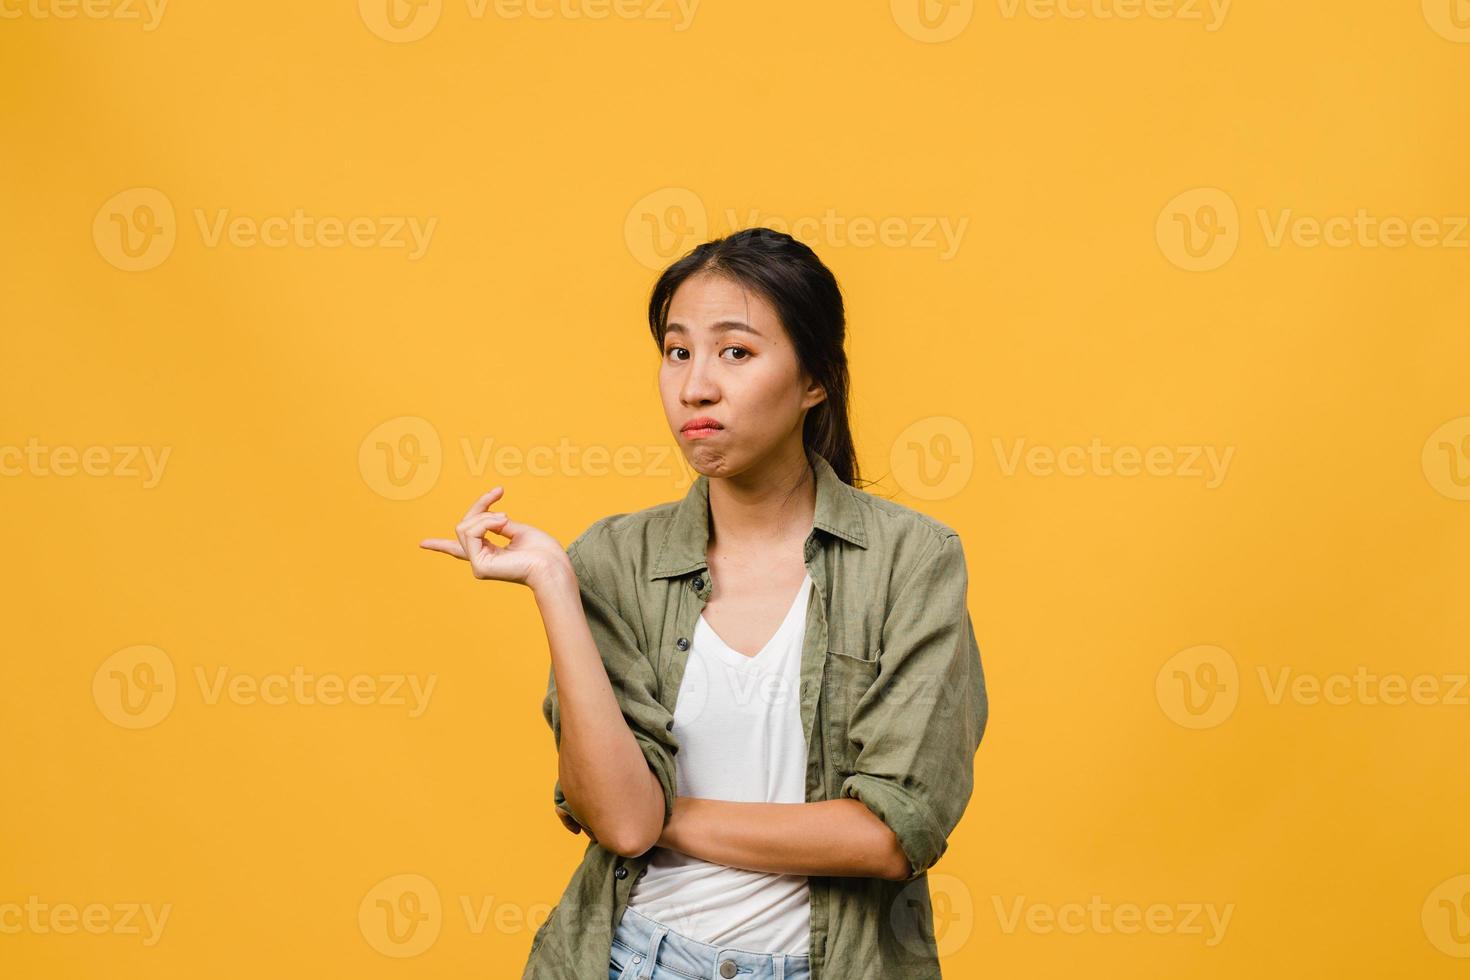 une jeune femme asiatique montre quelque chose d'étonnant dans un espace vide avec une expression négative, des cris excités, des pleurs émotionnels en colère en regardant la caméra isolée sur fond jaune. concept d'expression faciale. photo